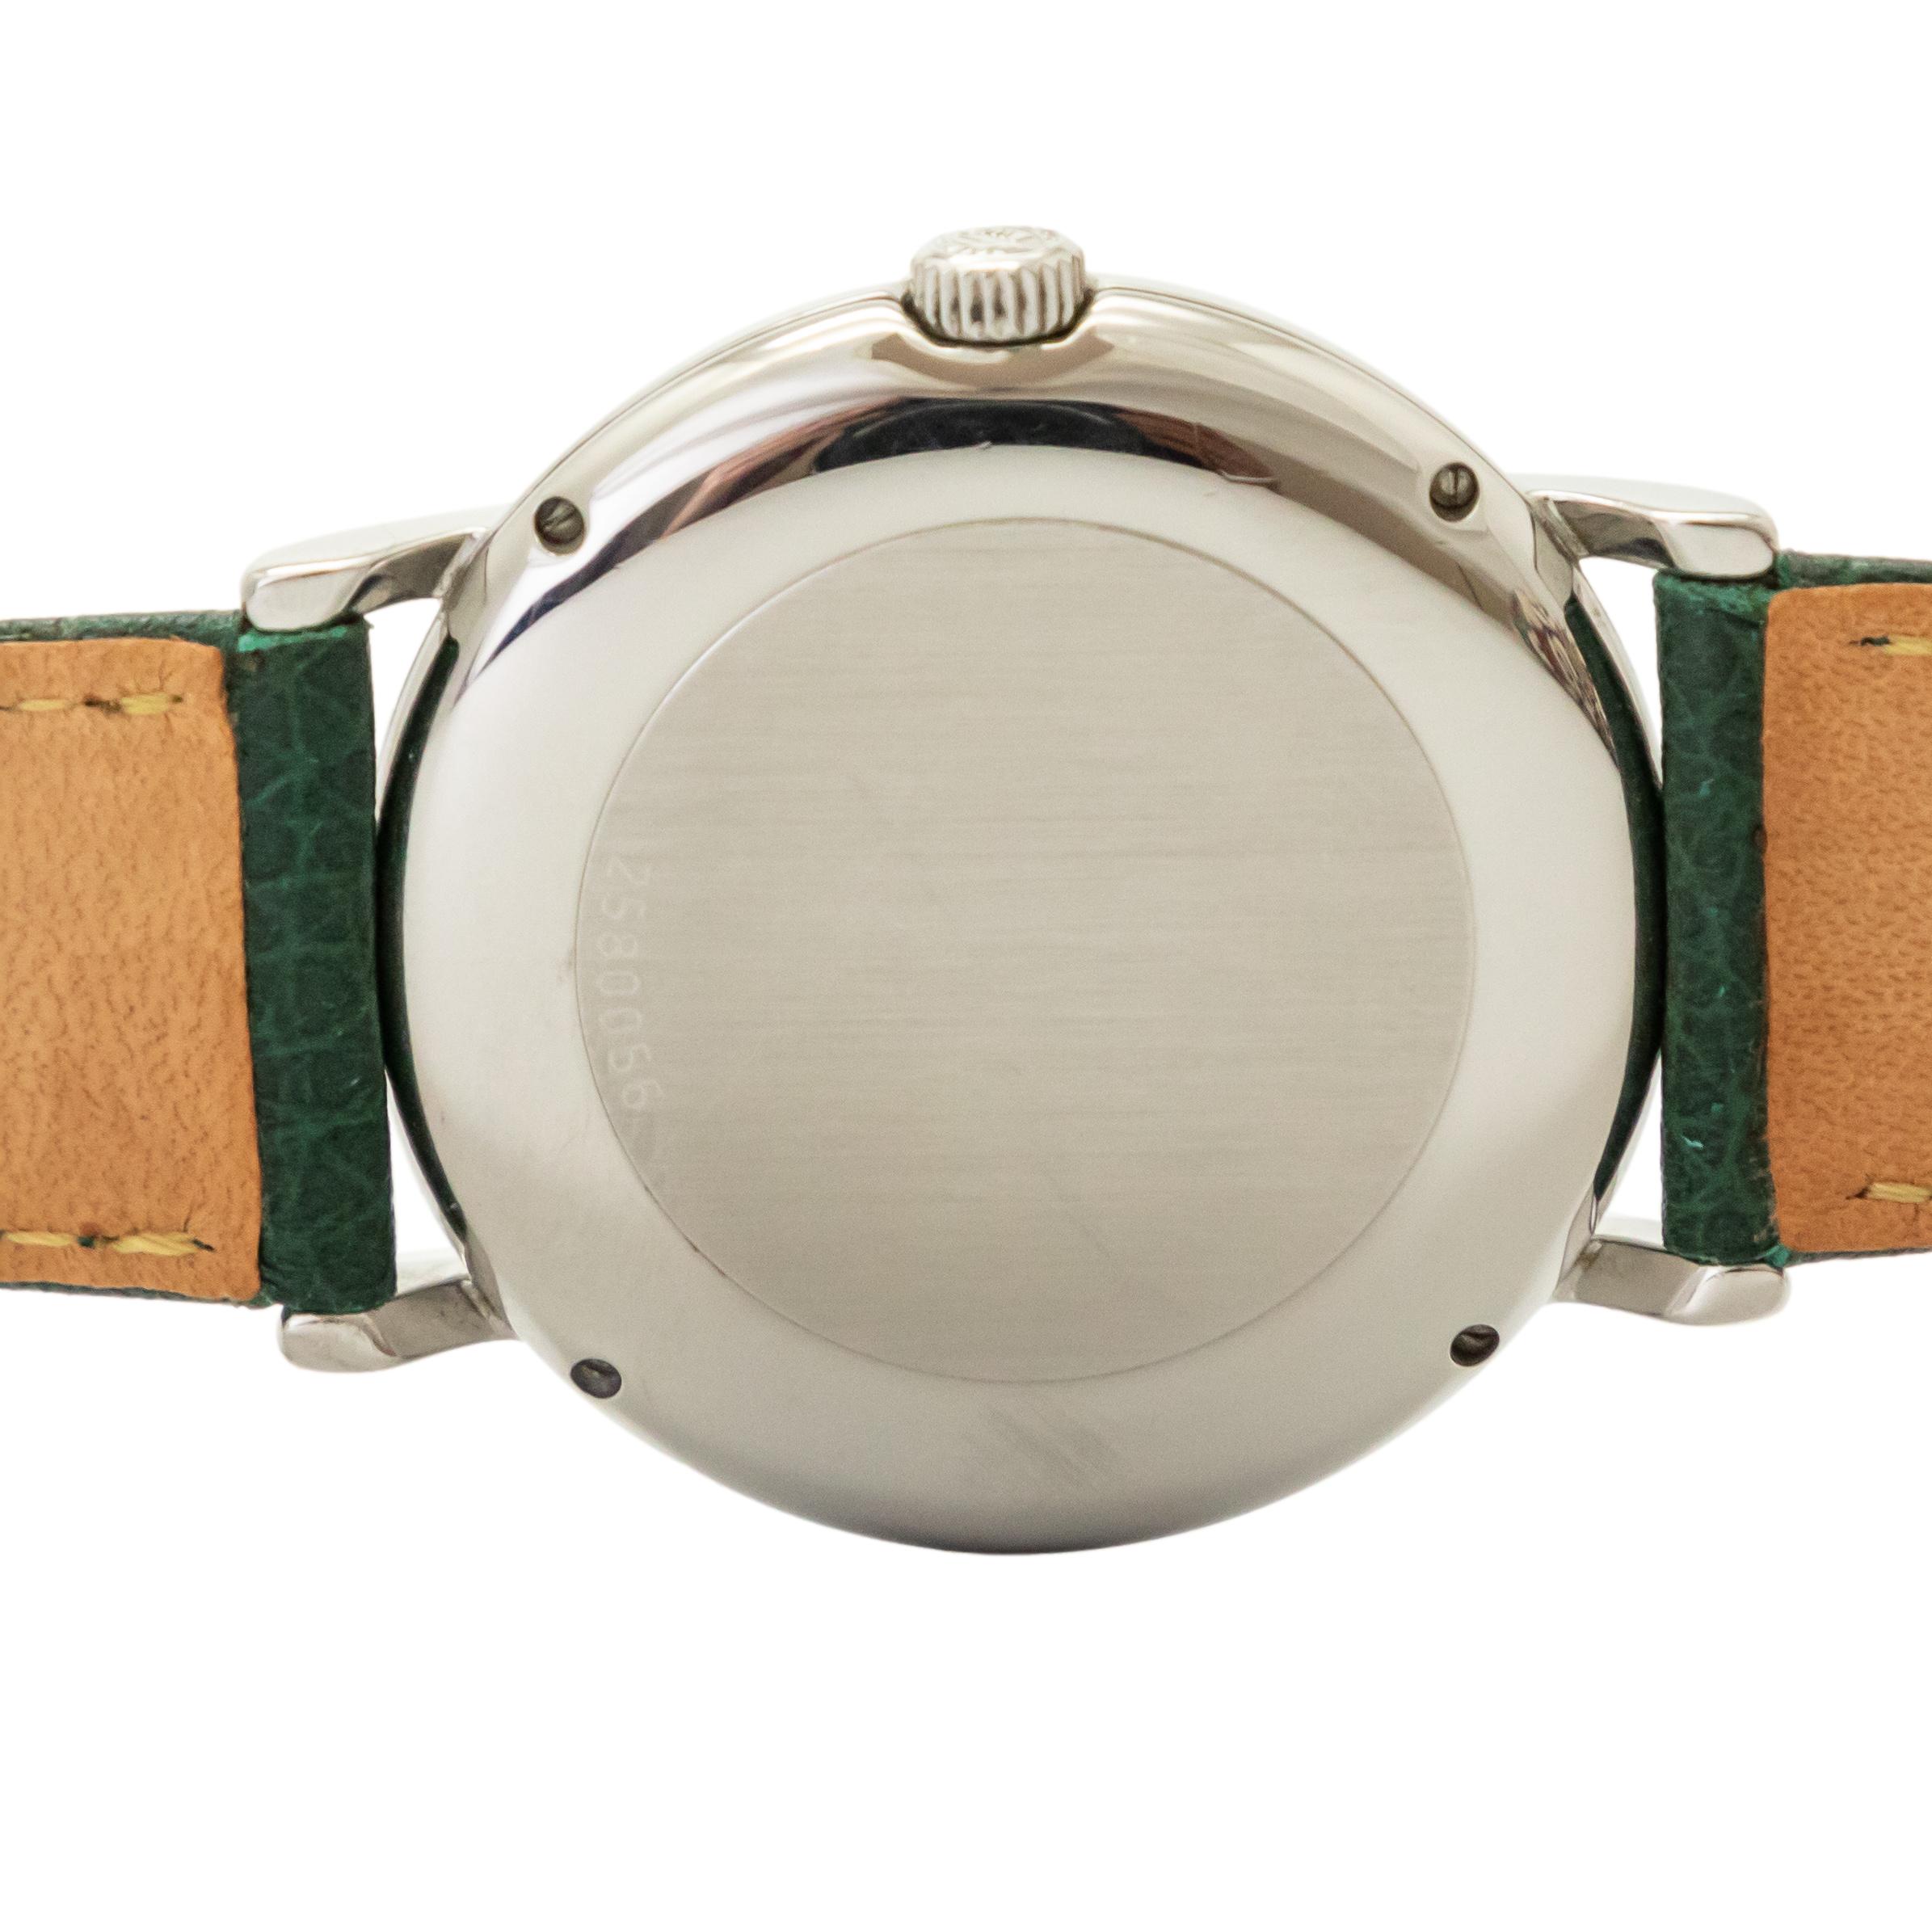 IWC ポートフィノ IW3514 魚リューズ ノンデイト 白文字盤 自動巻き 中古 メンズ腕時計